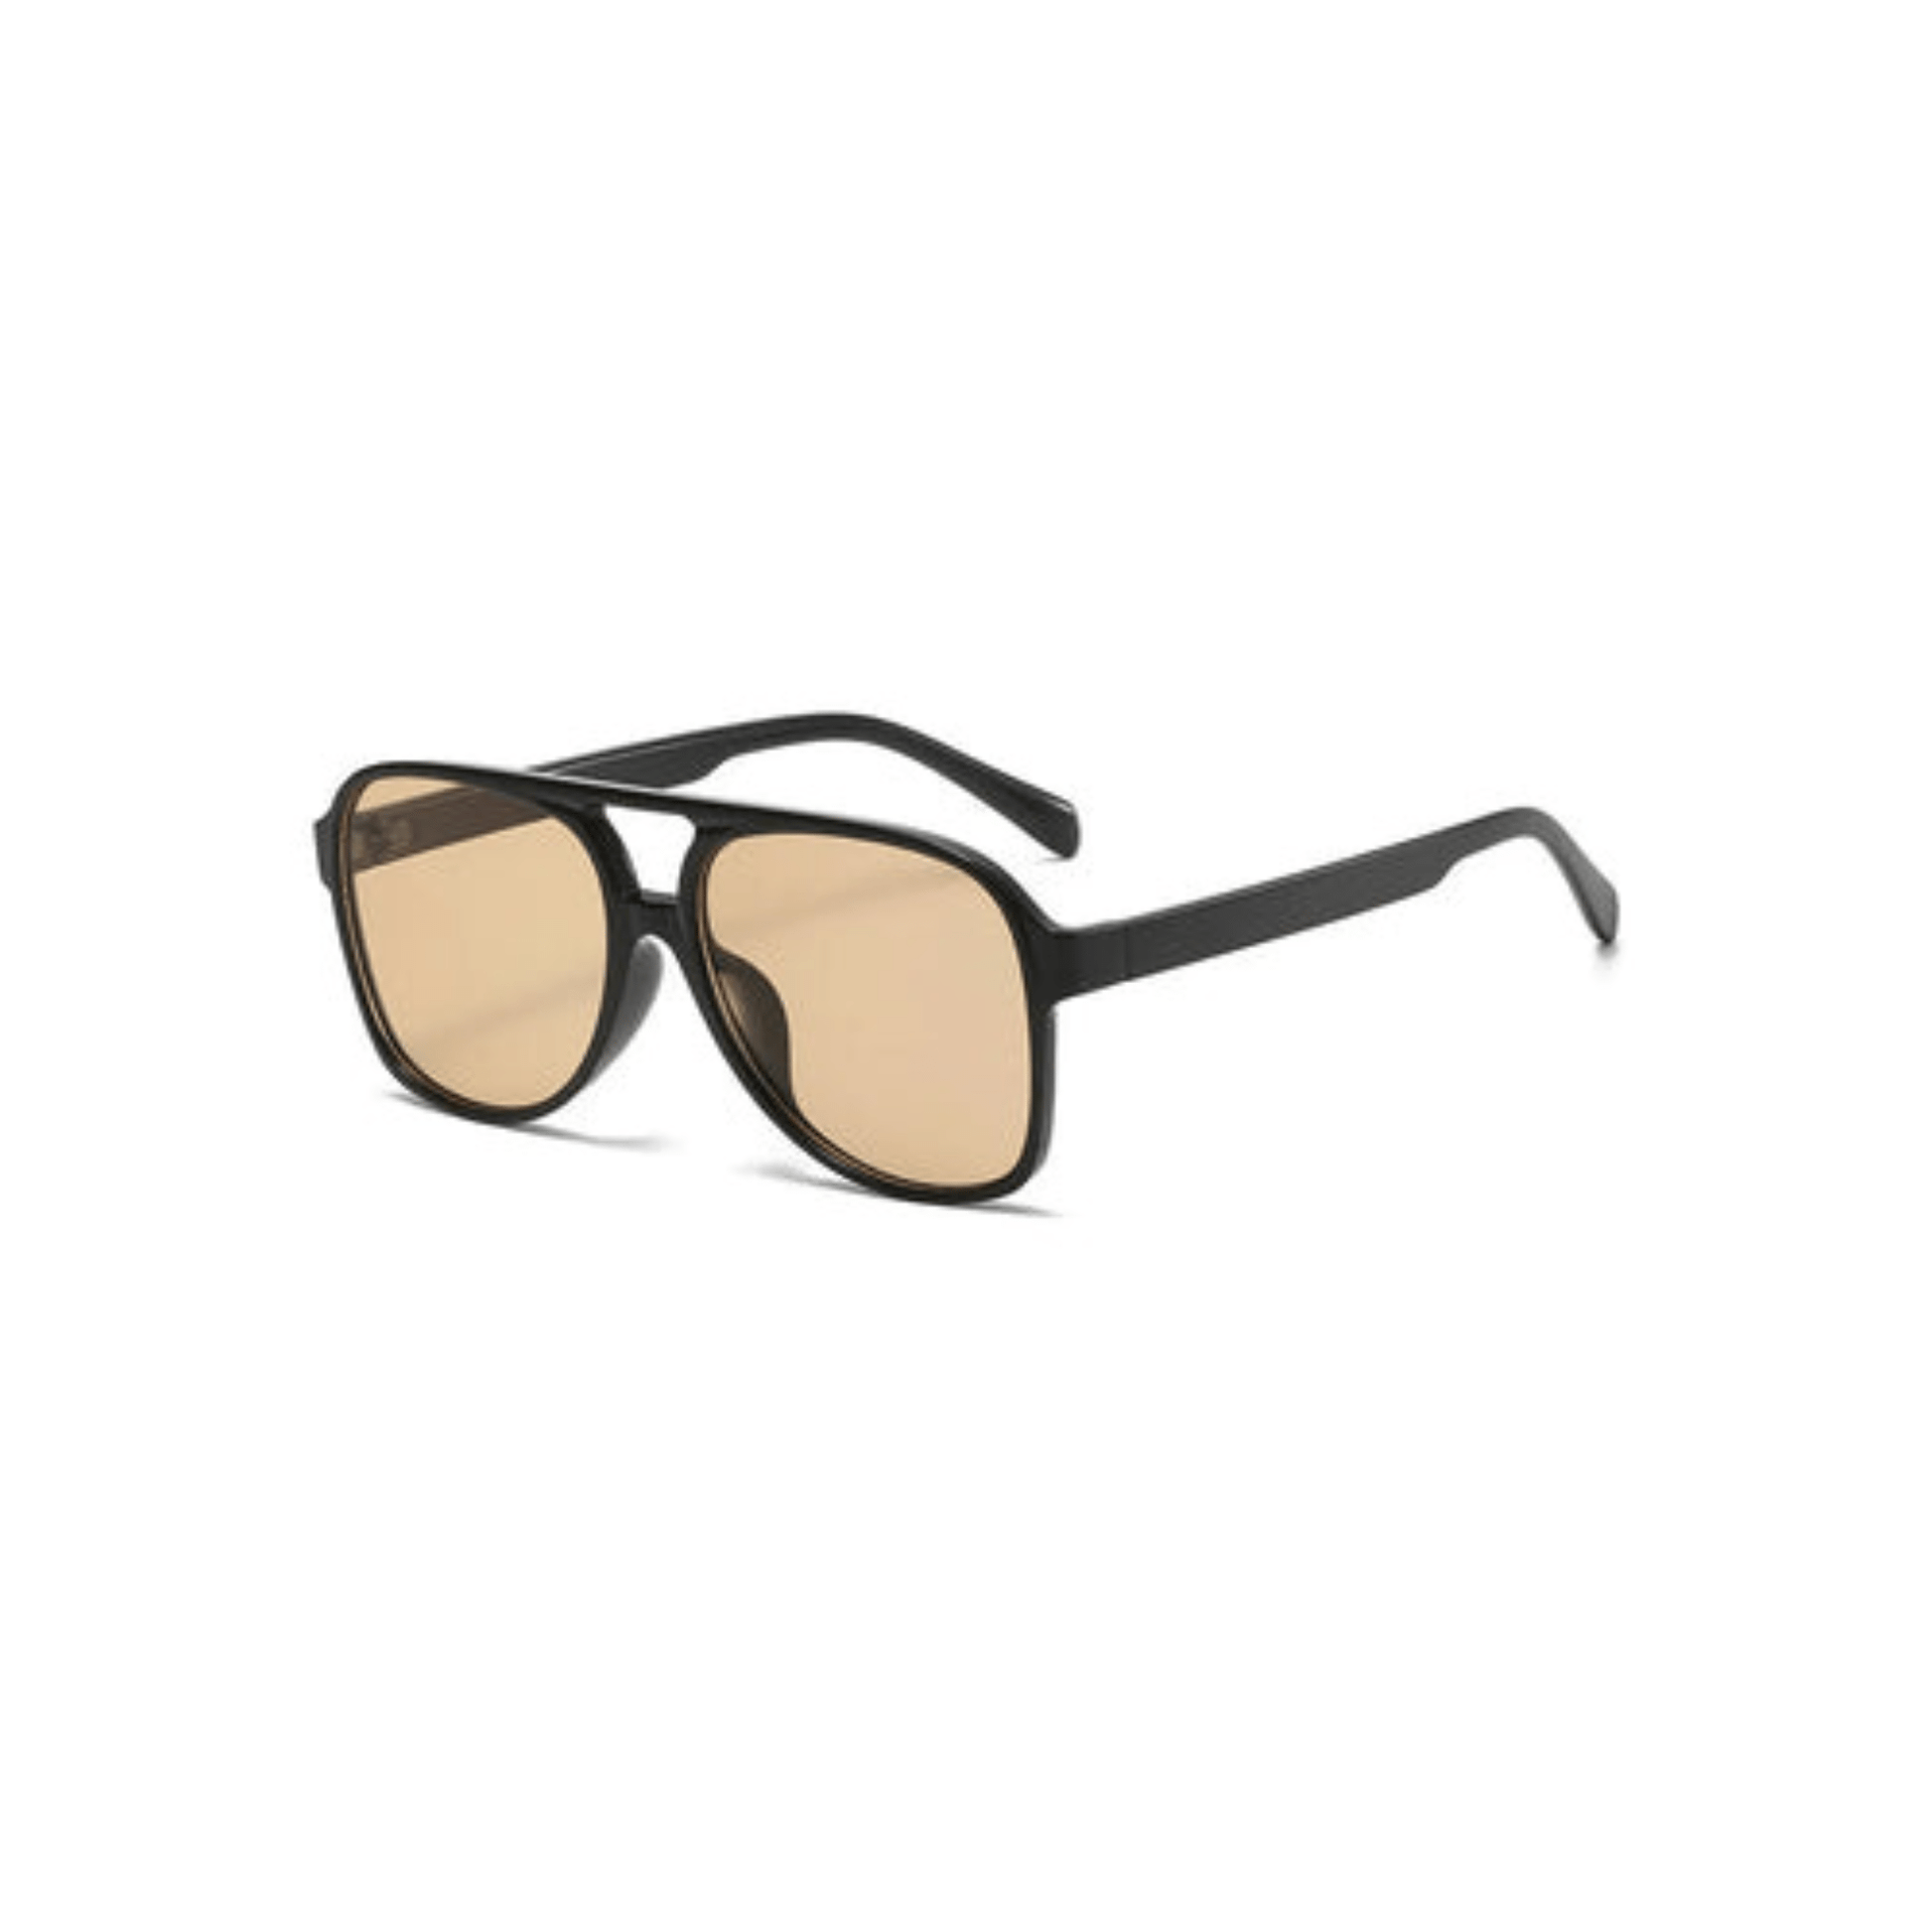 aviator sunglasses orange lens black frame desert festival accessories